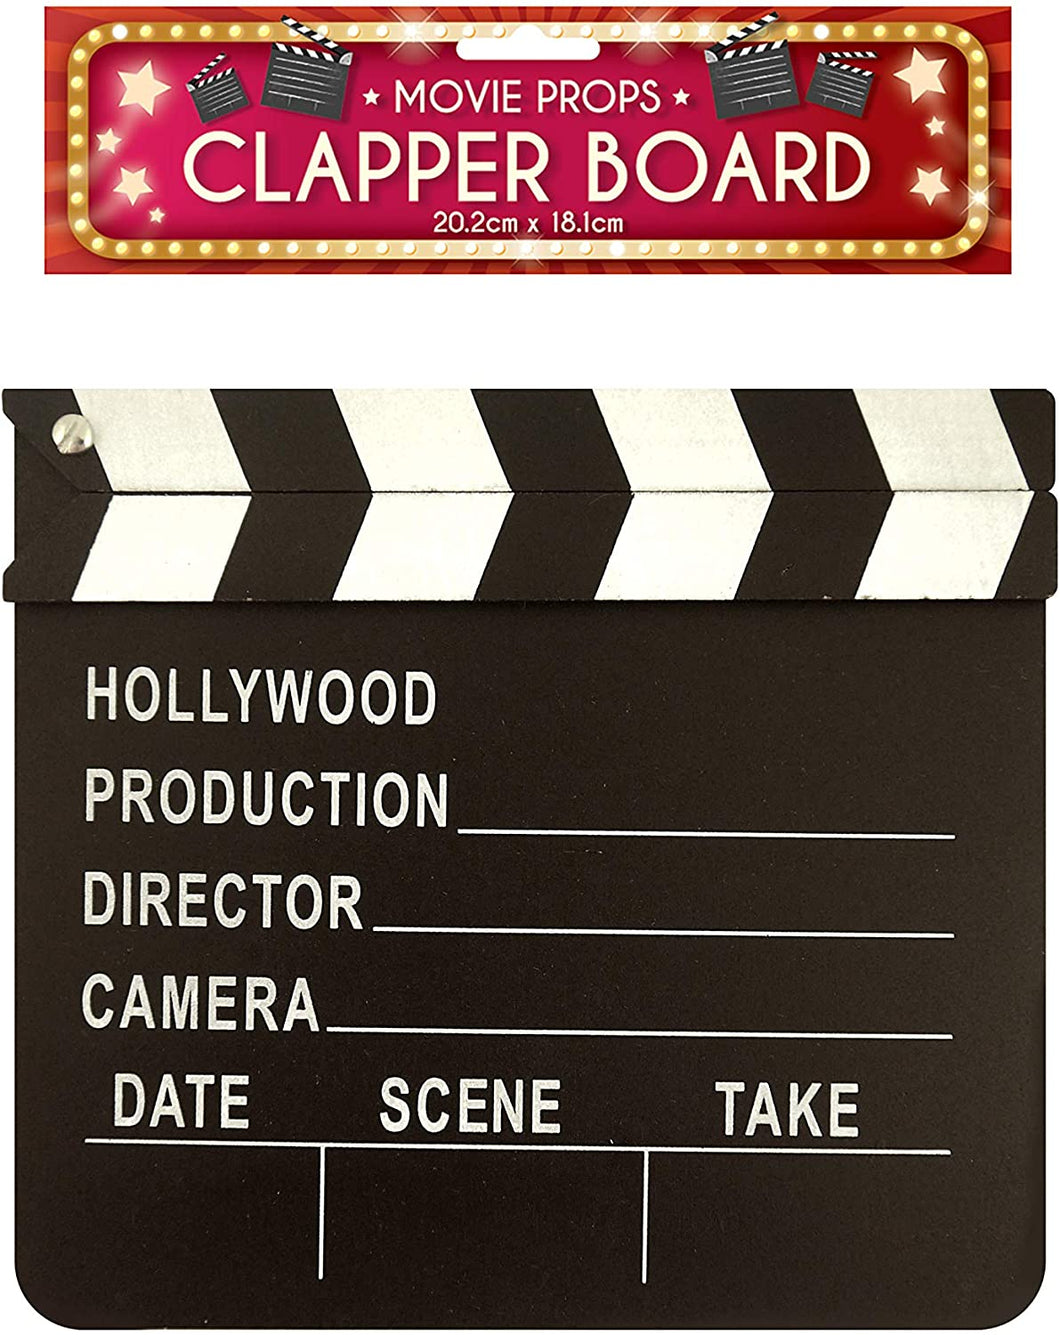 clapper board & film strip